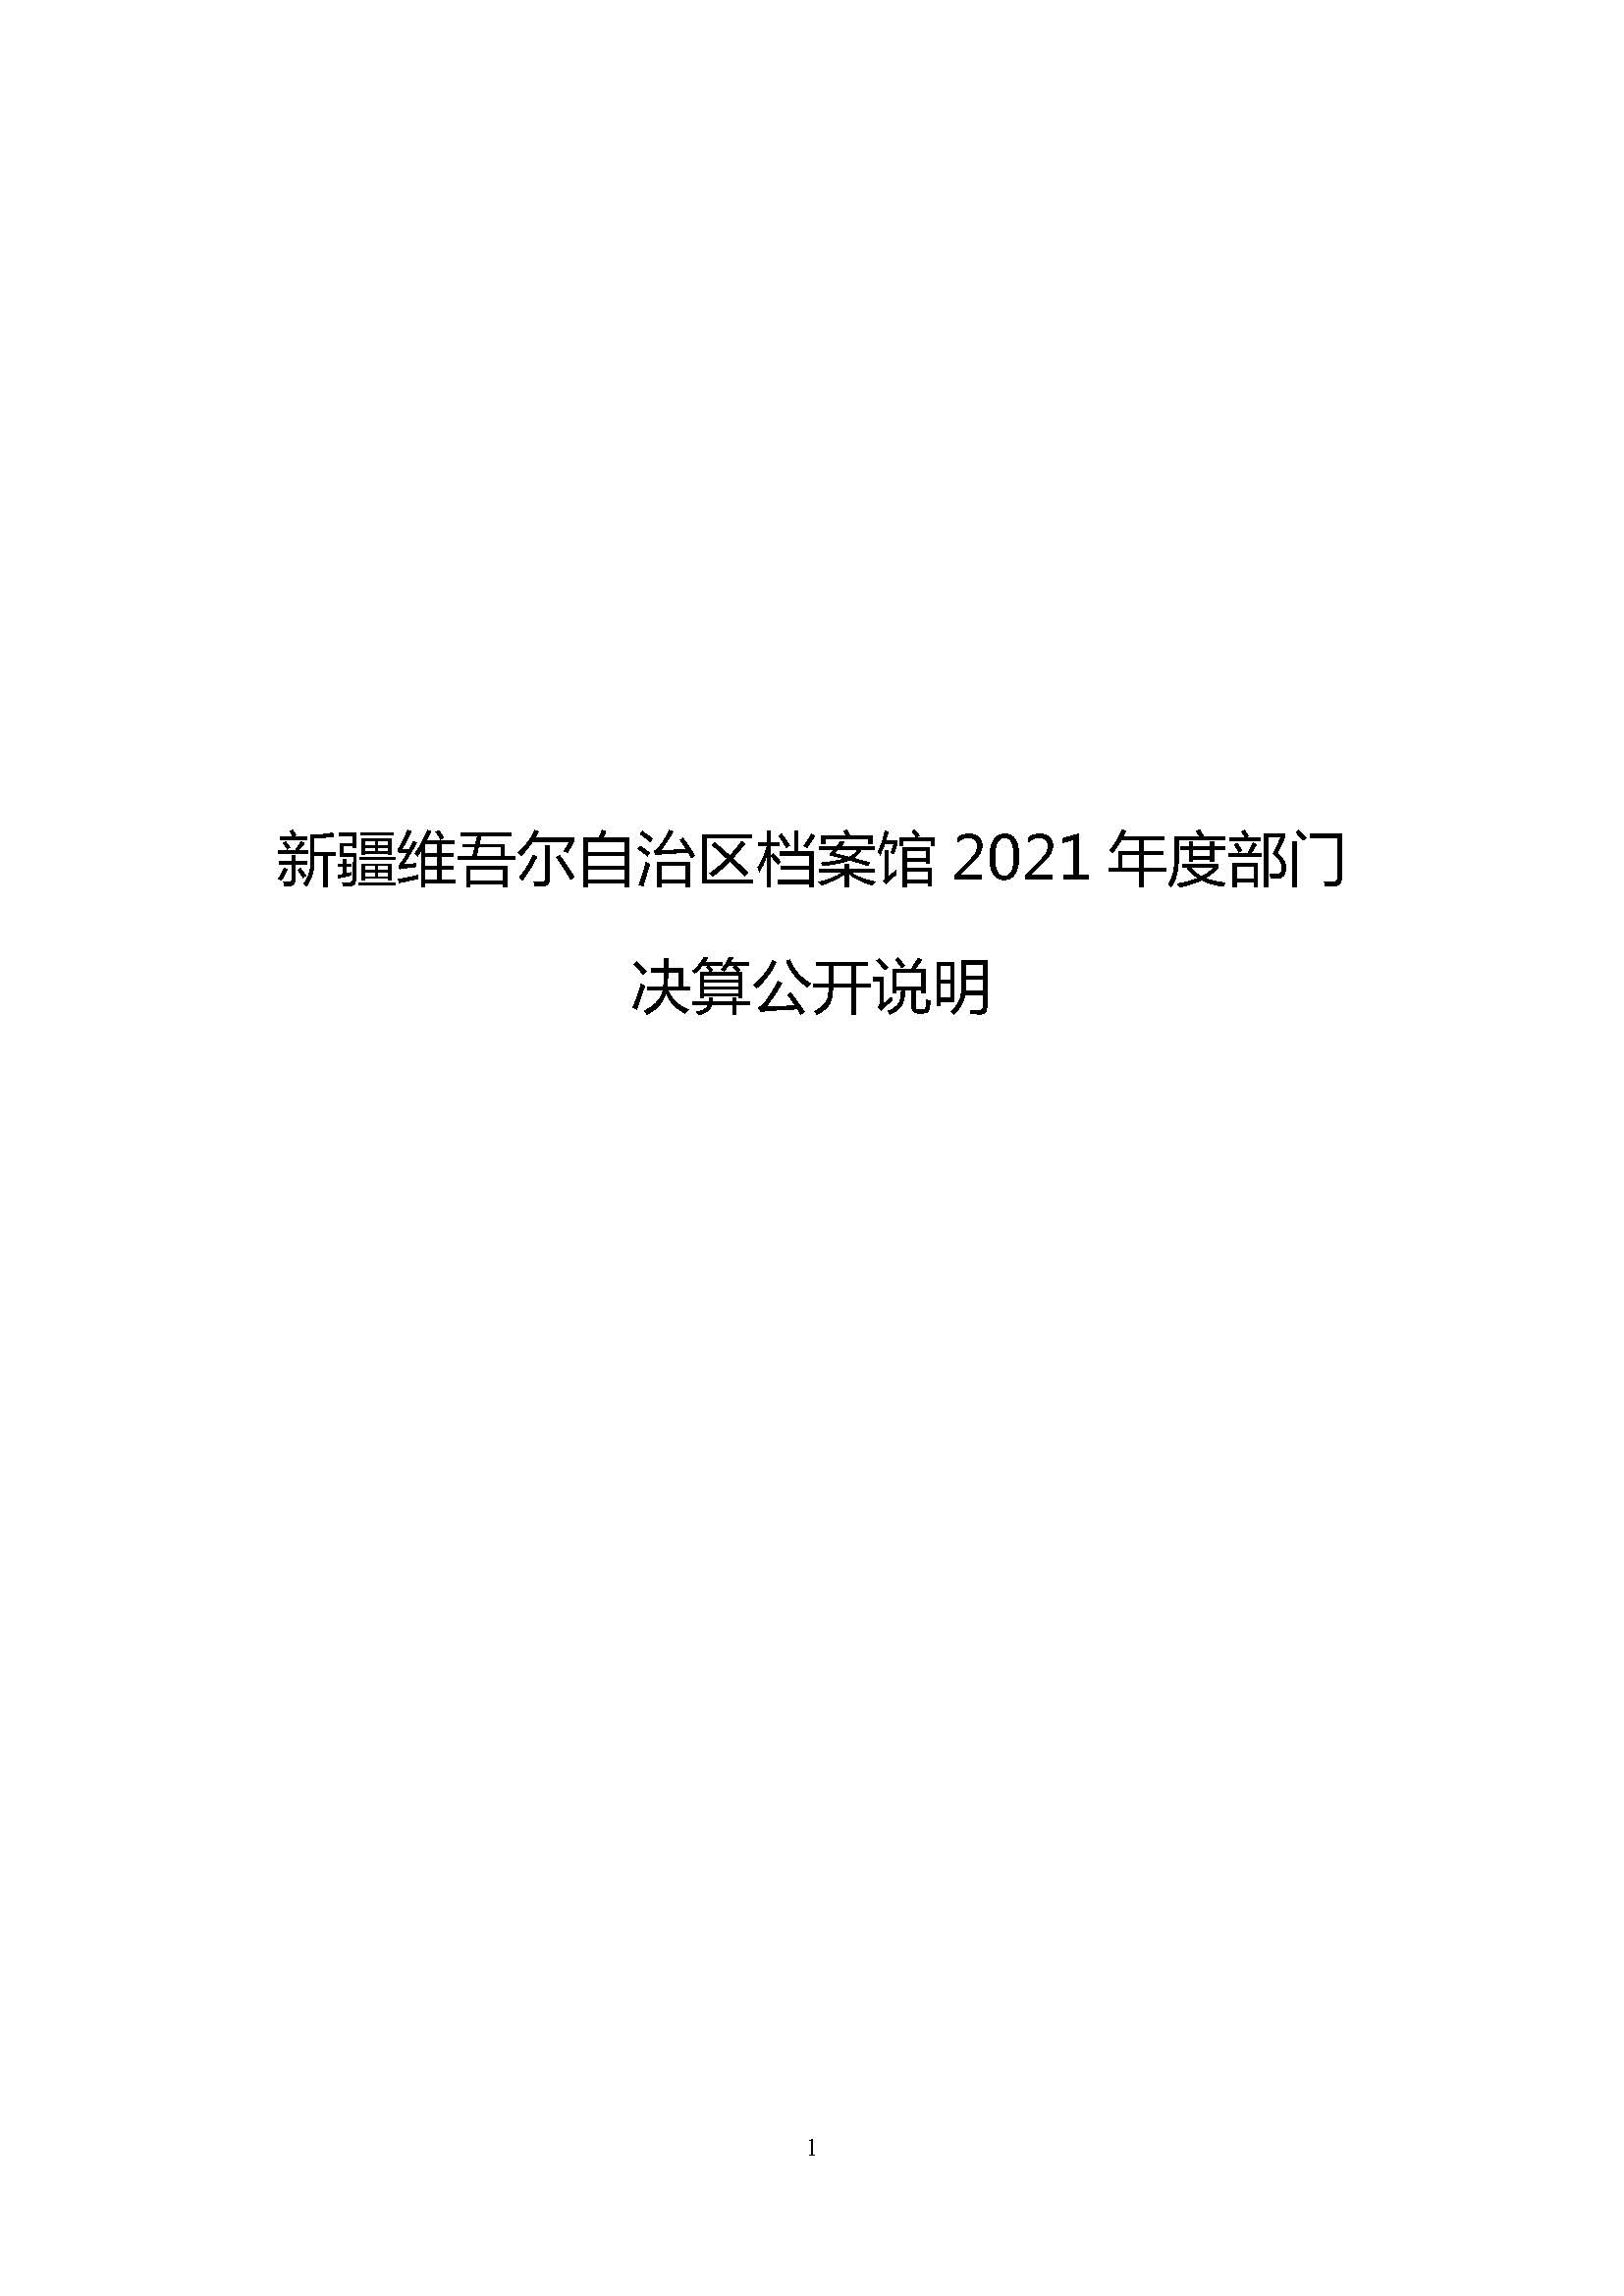 档案馆2021年度决算公开9.1.PM_页面_01.jpg